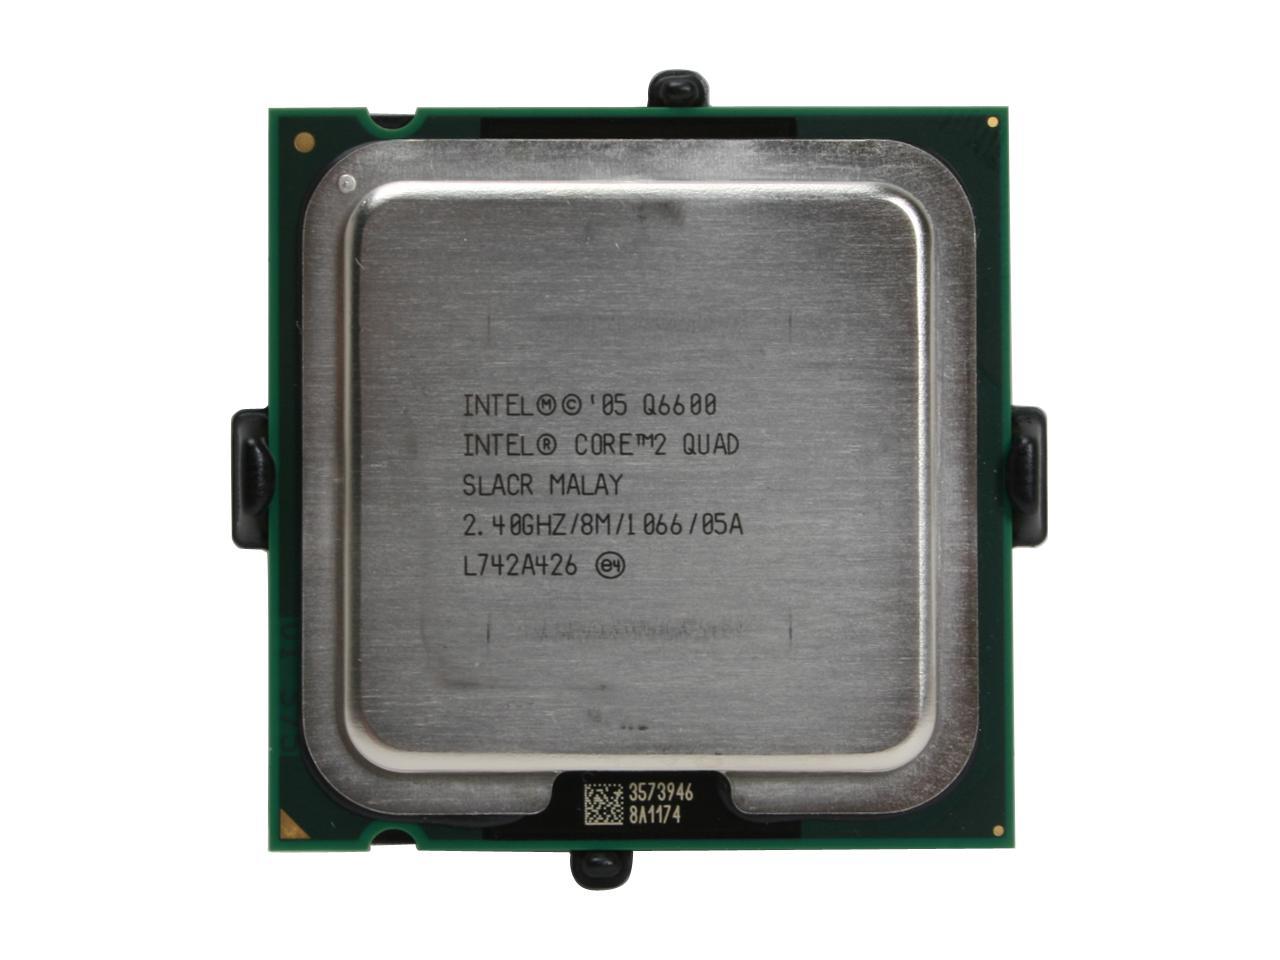 Intel Core 2 Quad Q6600 - Core 2 Quad Kentsfield Quad-Core 2.4 GHz LGA 775  95W Processor - HH80562PH0568M